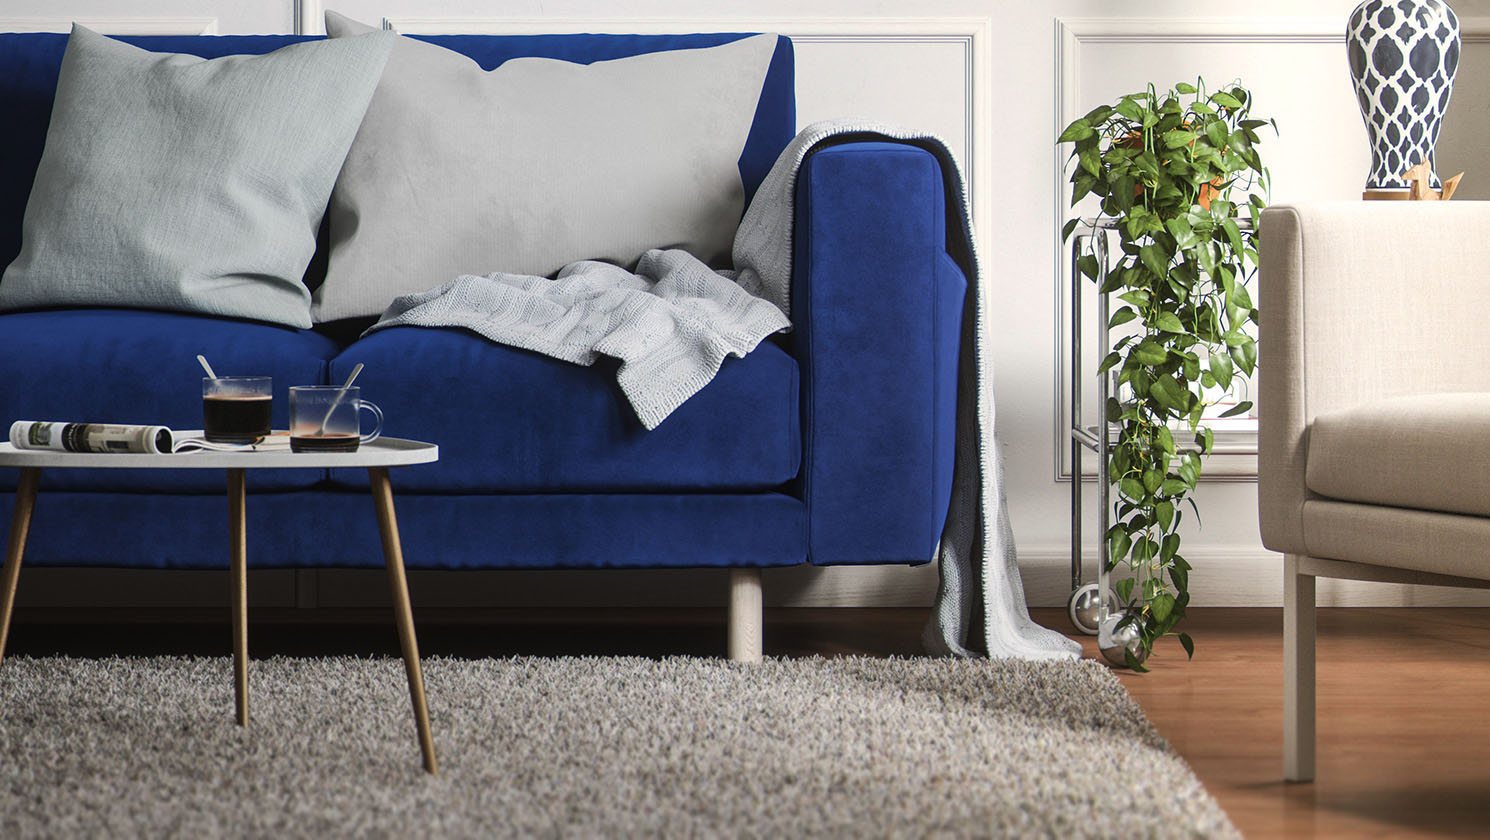 wakker worden privaat Landelijk Elevate your IKEA sofa with our brand new sofa legs | Comfort Works Blog &  Sofa Resources